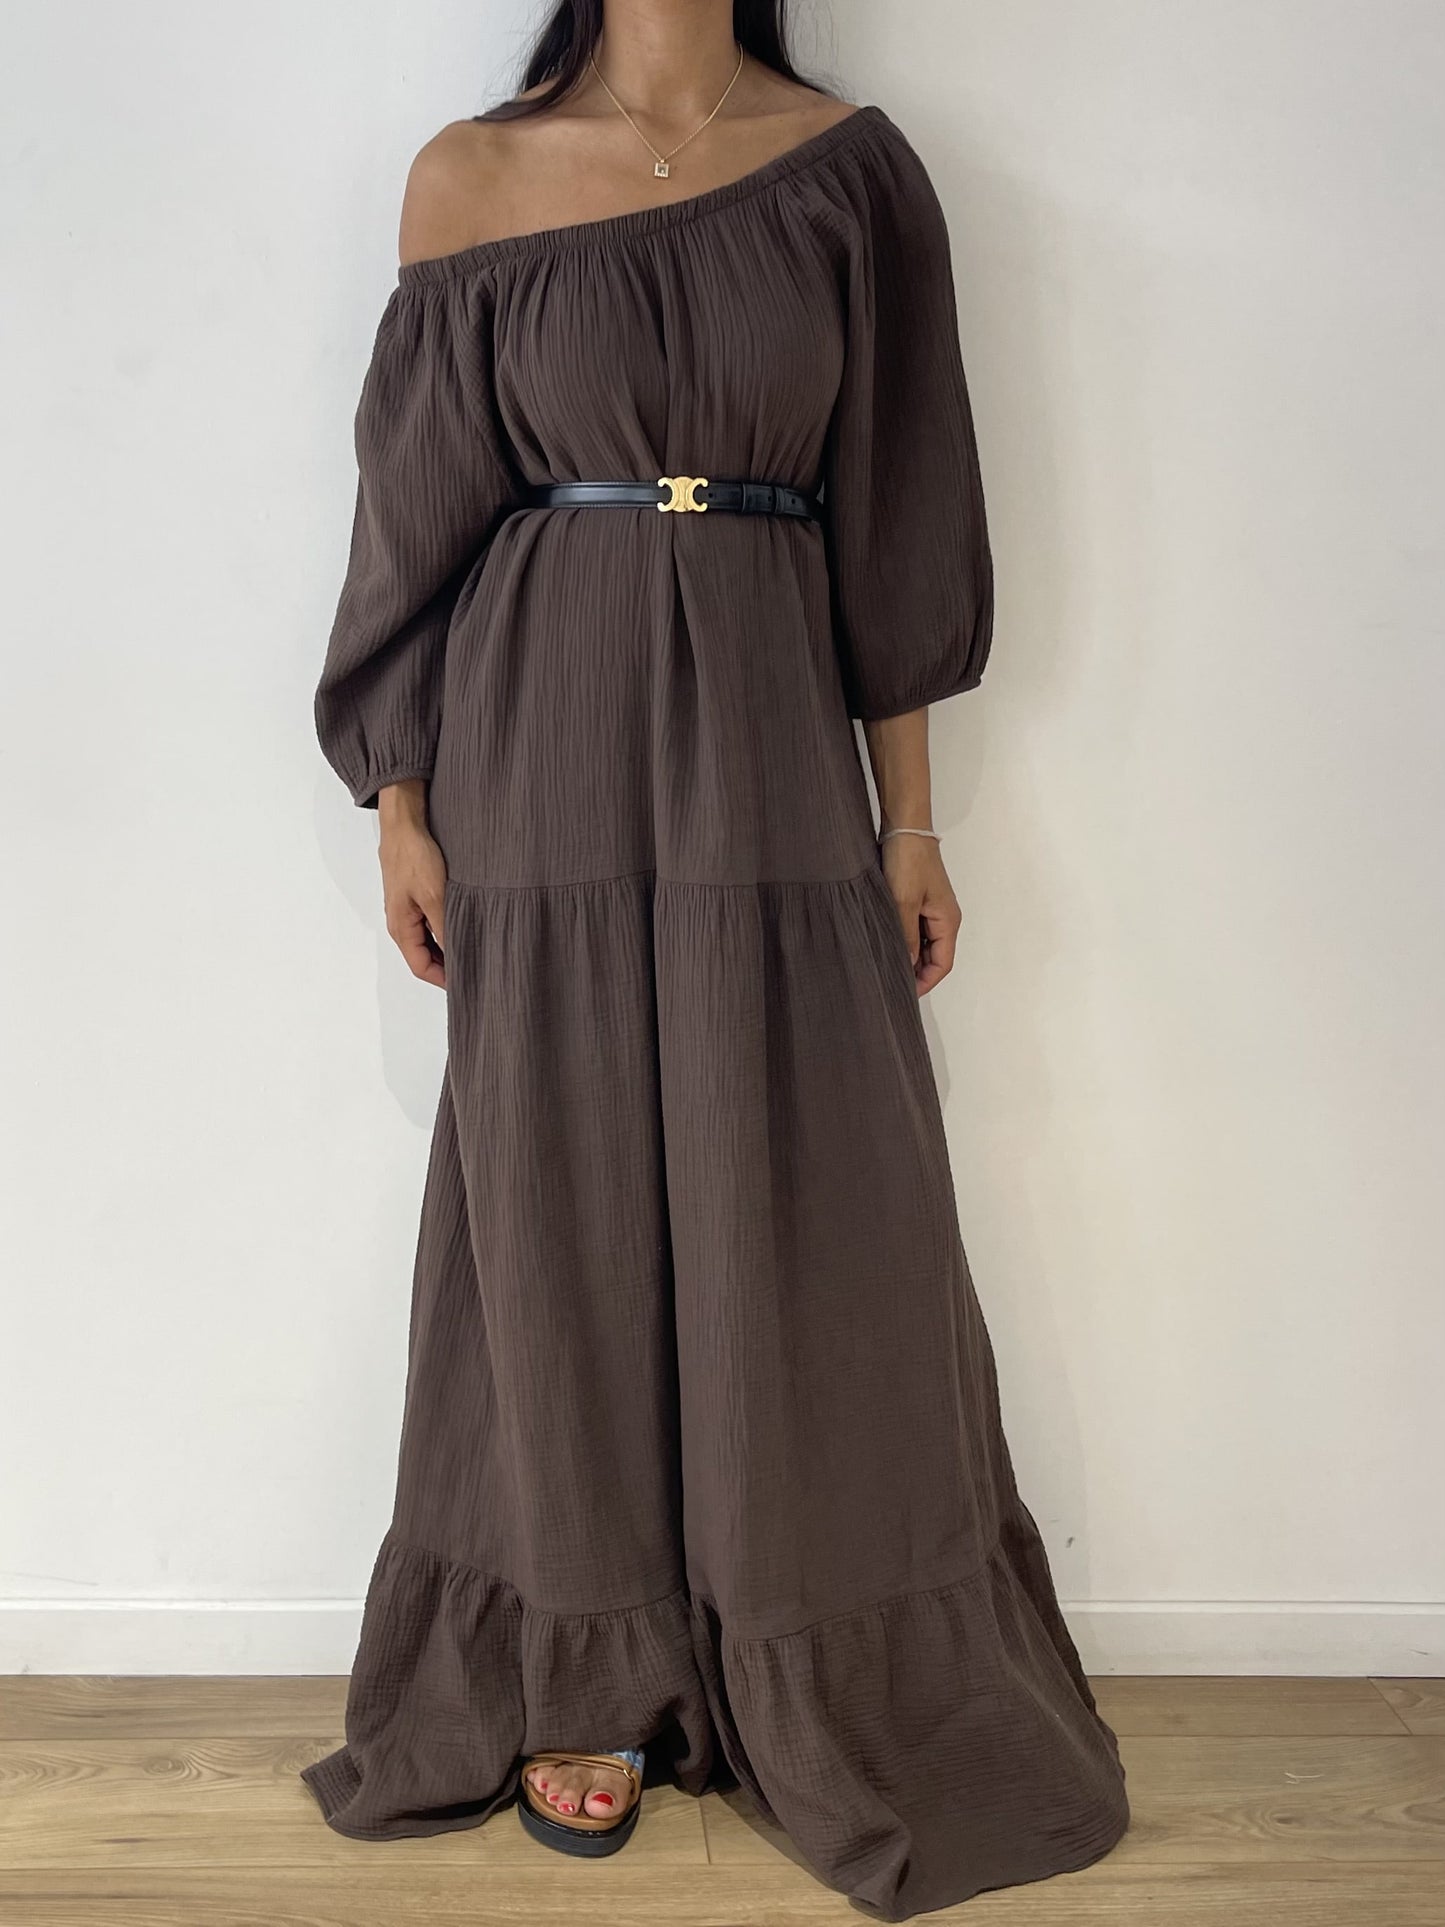 Femme portant une robe marron en gaze de coton avec épaules dénudées et ceinture noire.